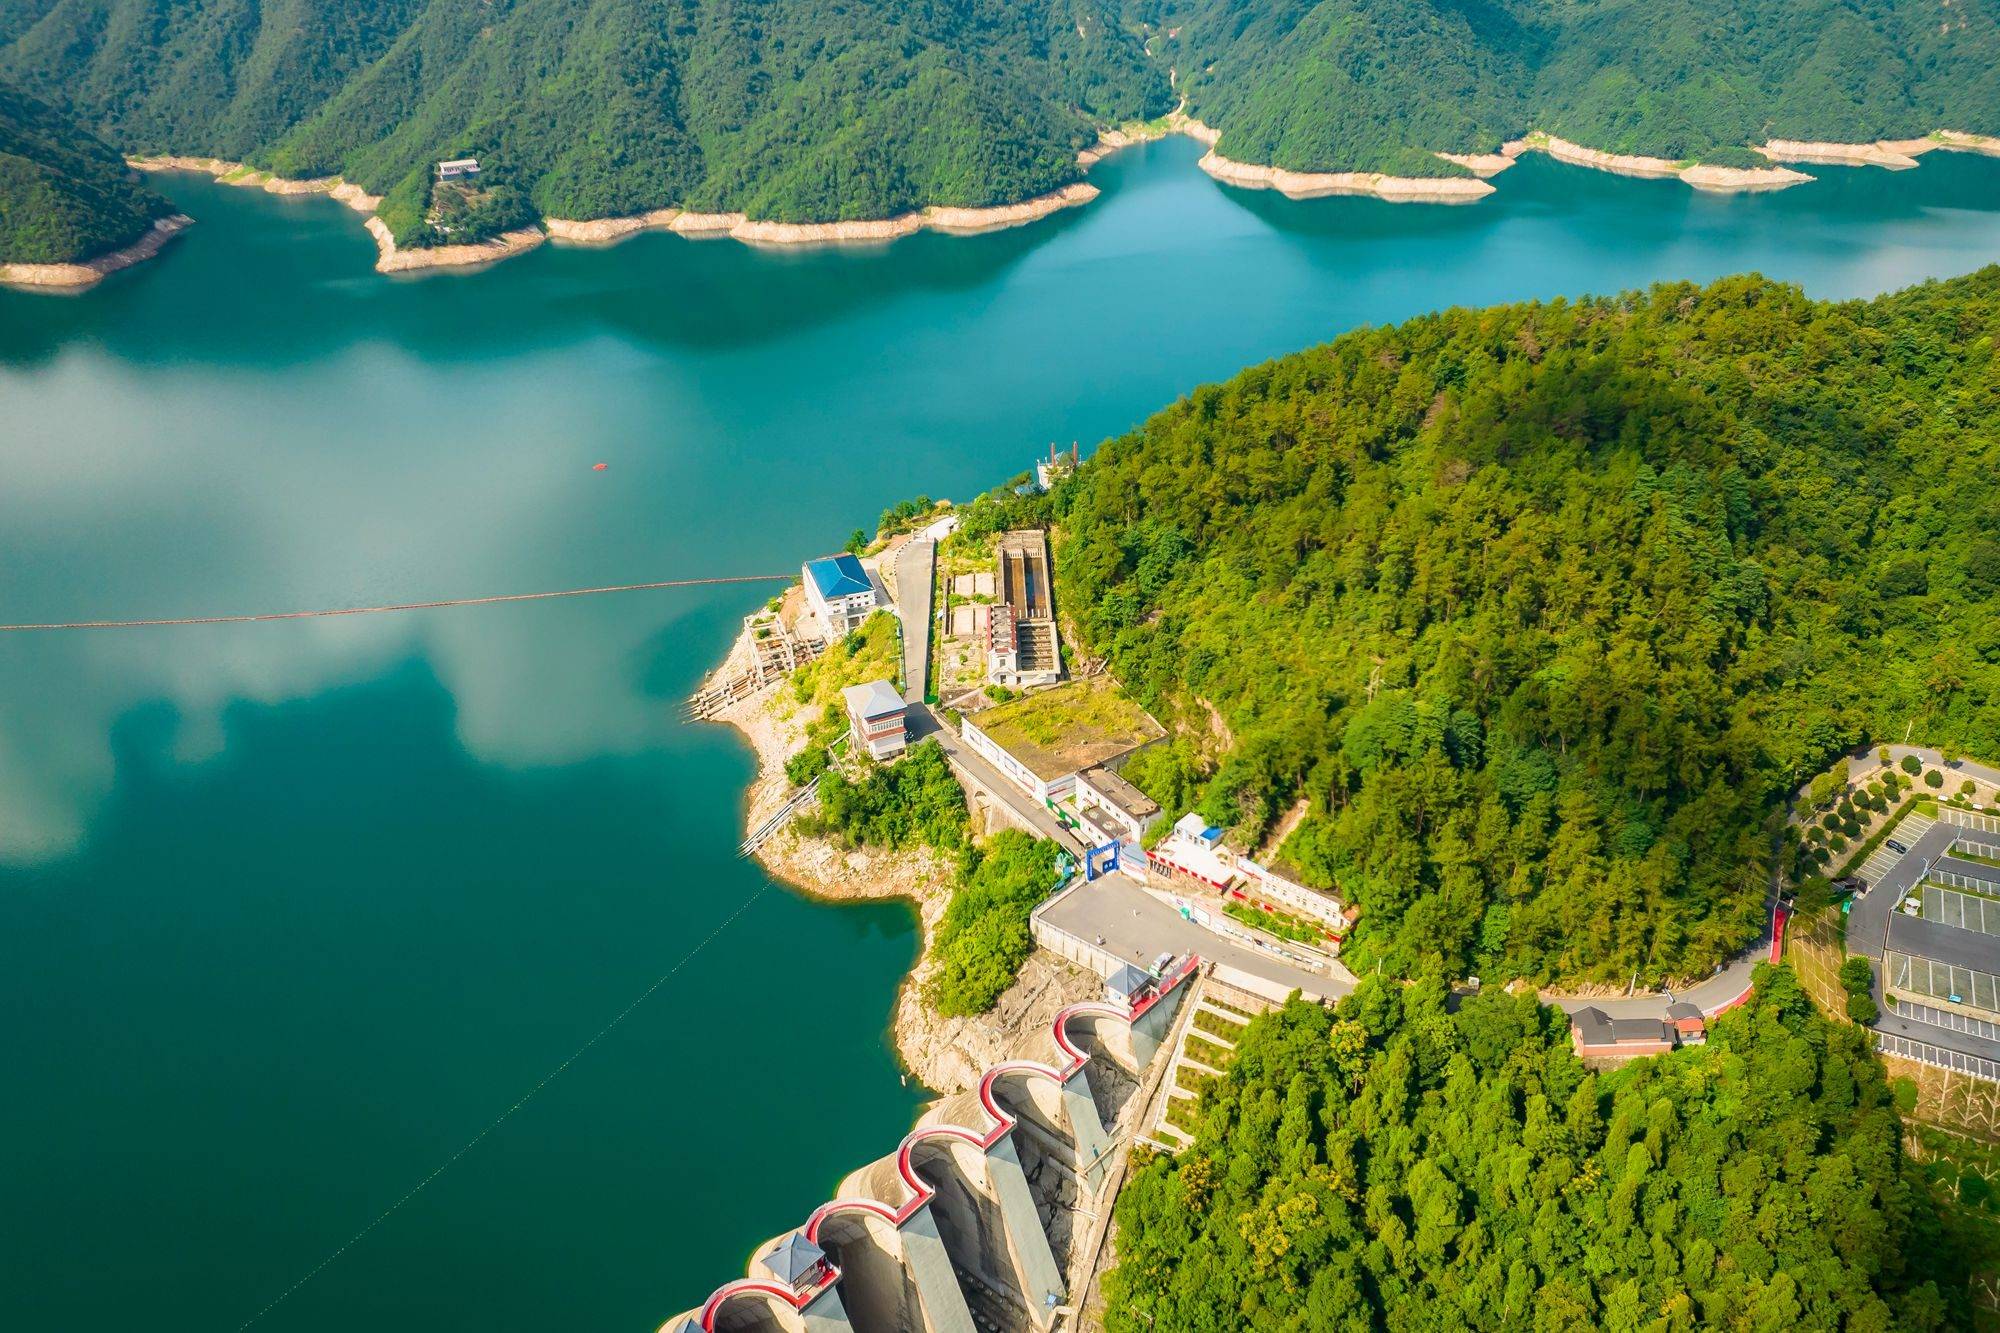 原创安徽六安梅山水库这里的人工湖风光秀美俯览如同江南风情画